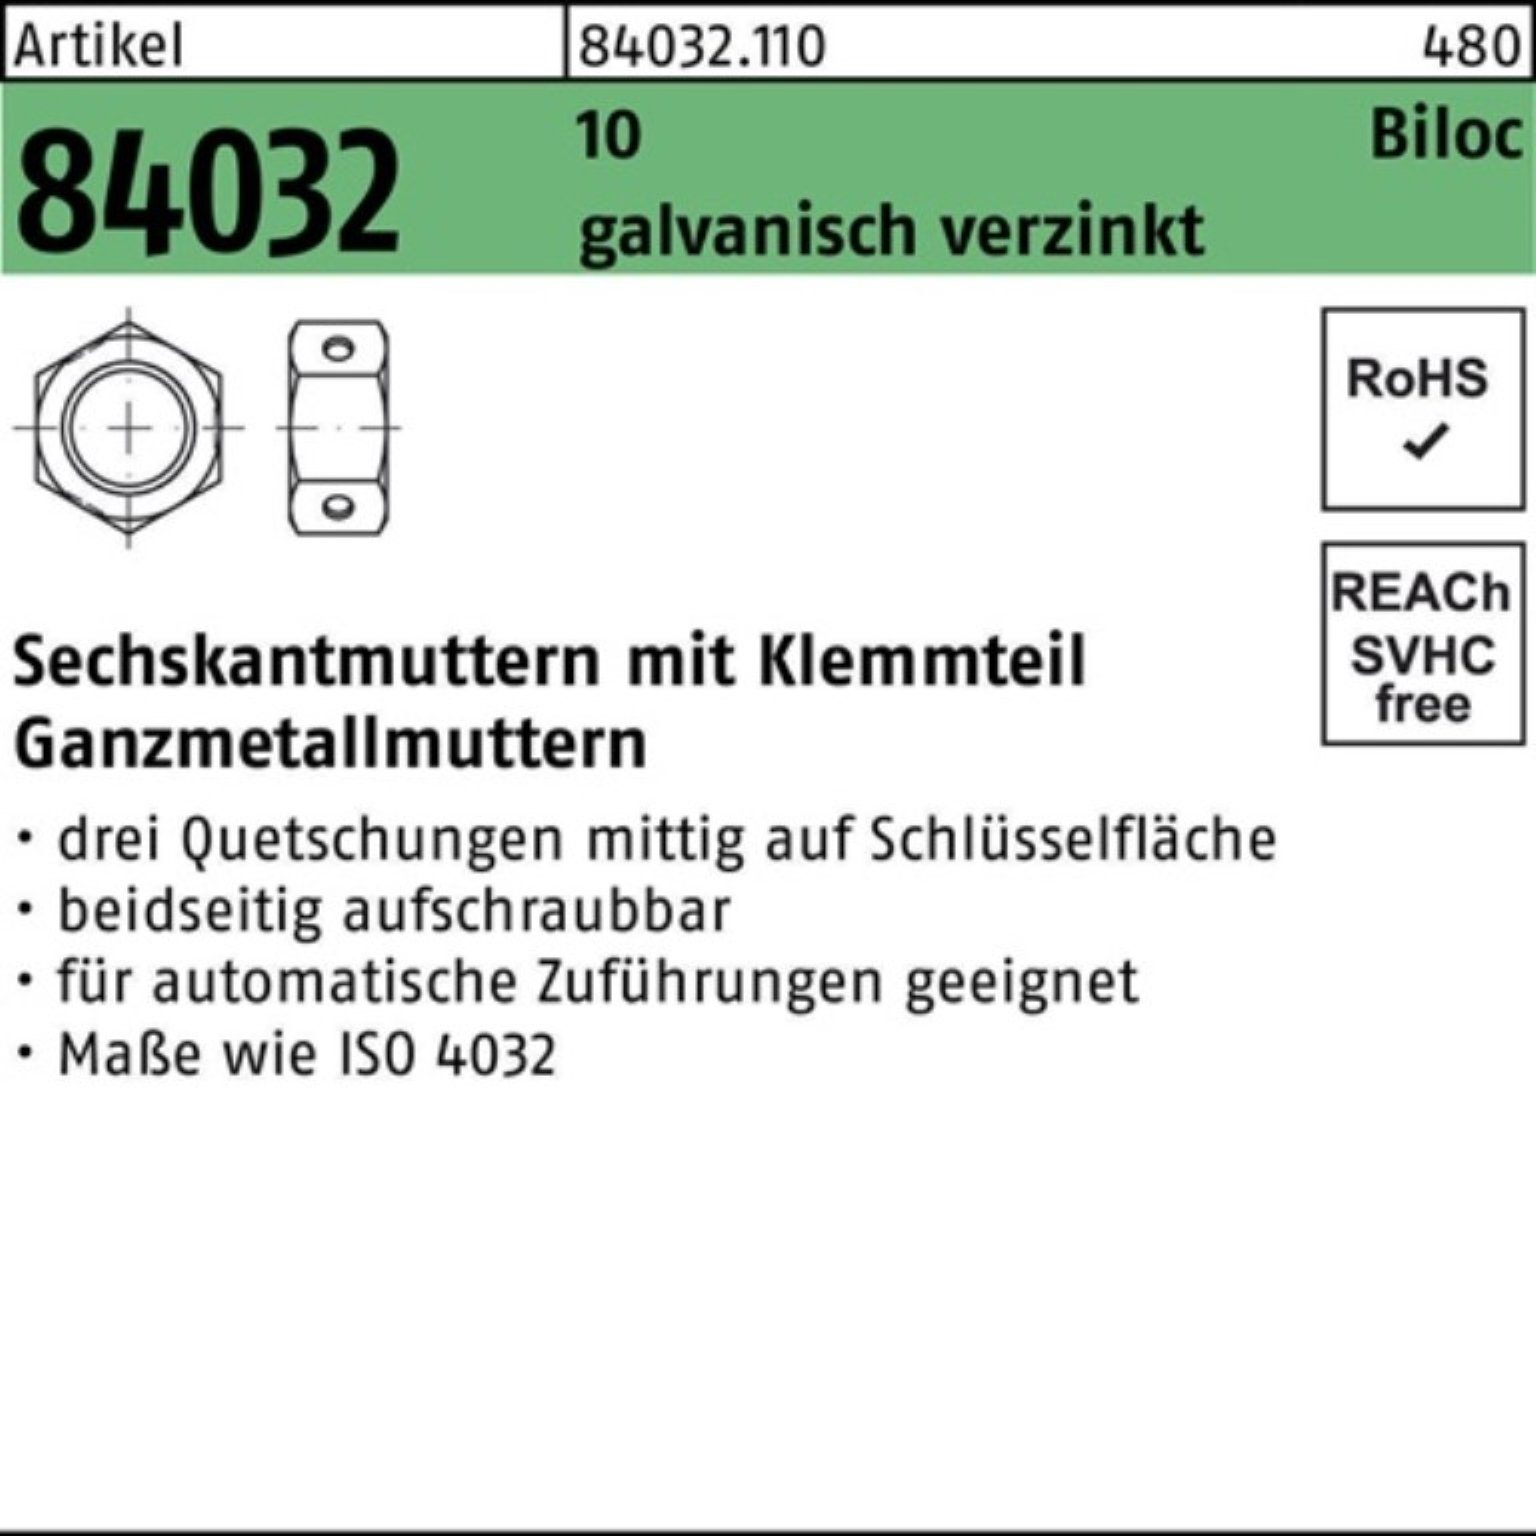 Reyher Muttern 500er Pack Sechskantmutter R 84032 Biloc Klemmteil M10 10 galv.verz. 5